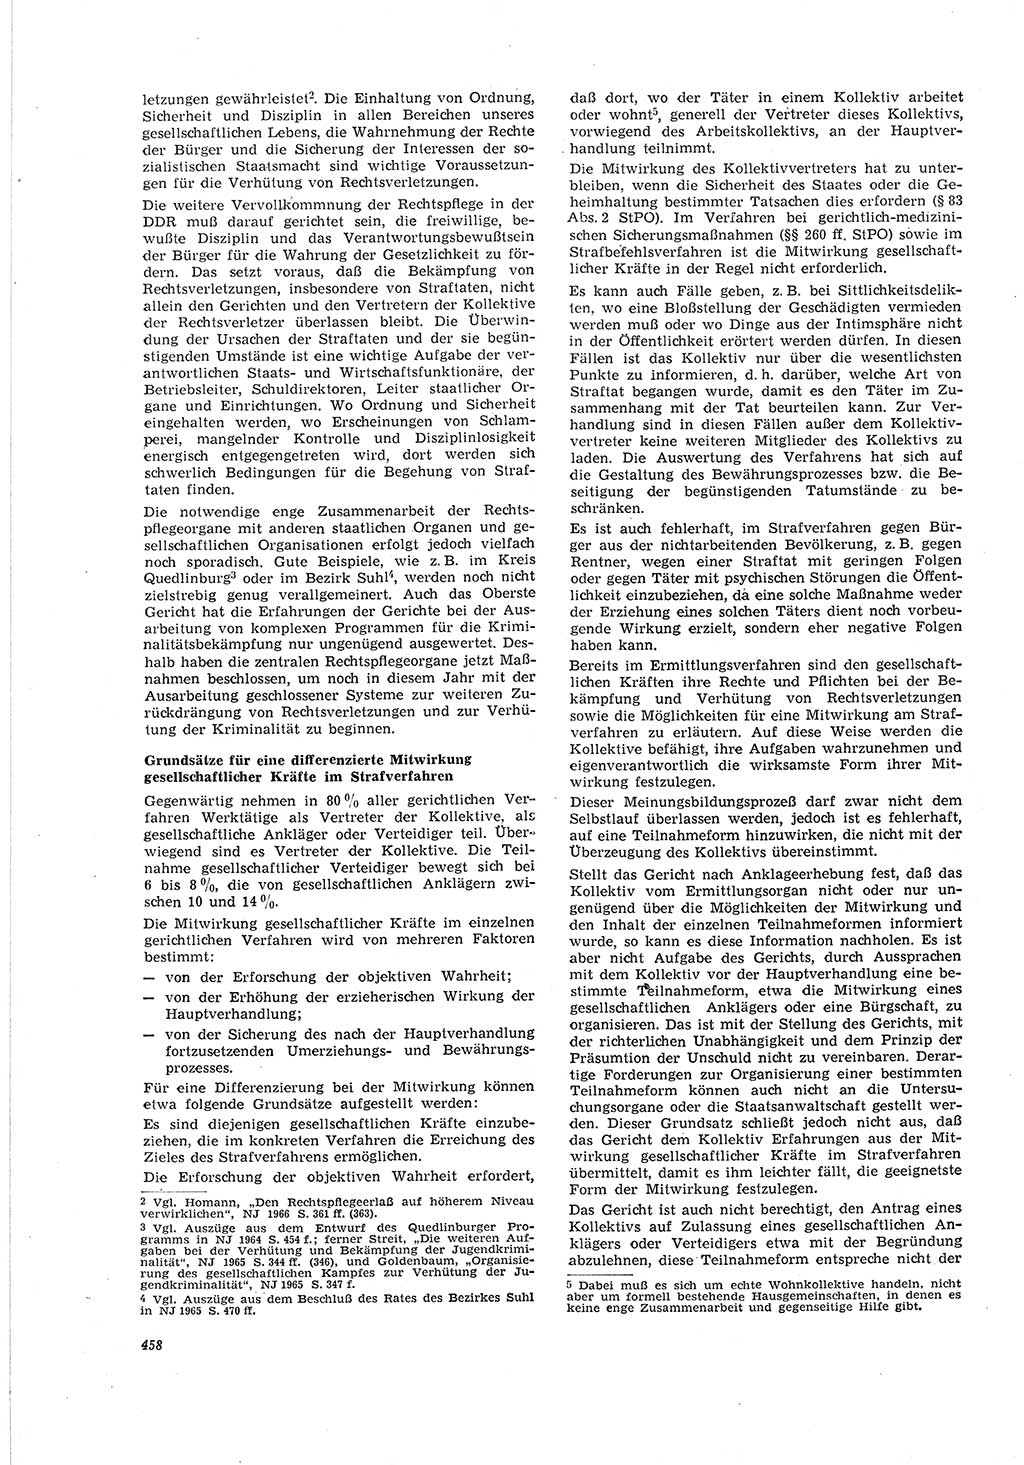 Neue Justiz (NJ), Zeitschrift für Recht und Rechtswissenschaft [Deutsche Demokratische Republik (DDR)], 20. Jahrgang 1966, Seite 458 (NJ DDR 1966, S. 458)